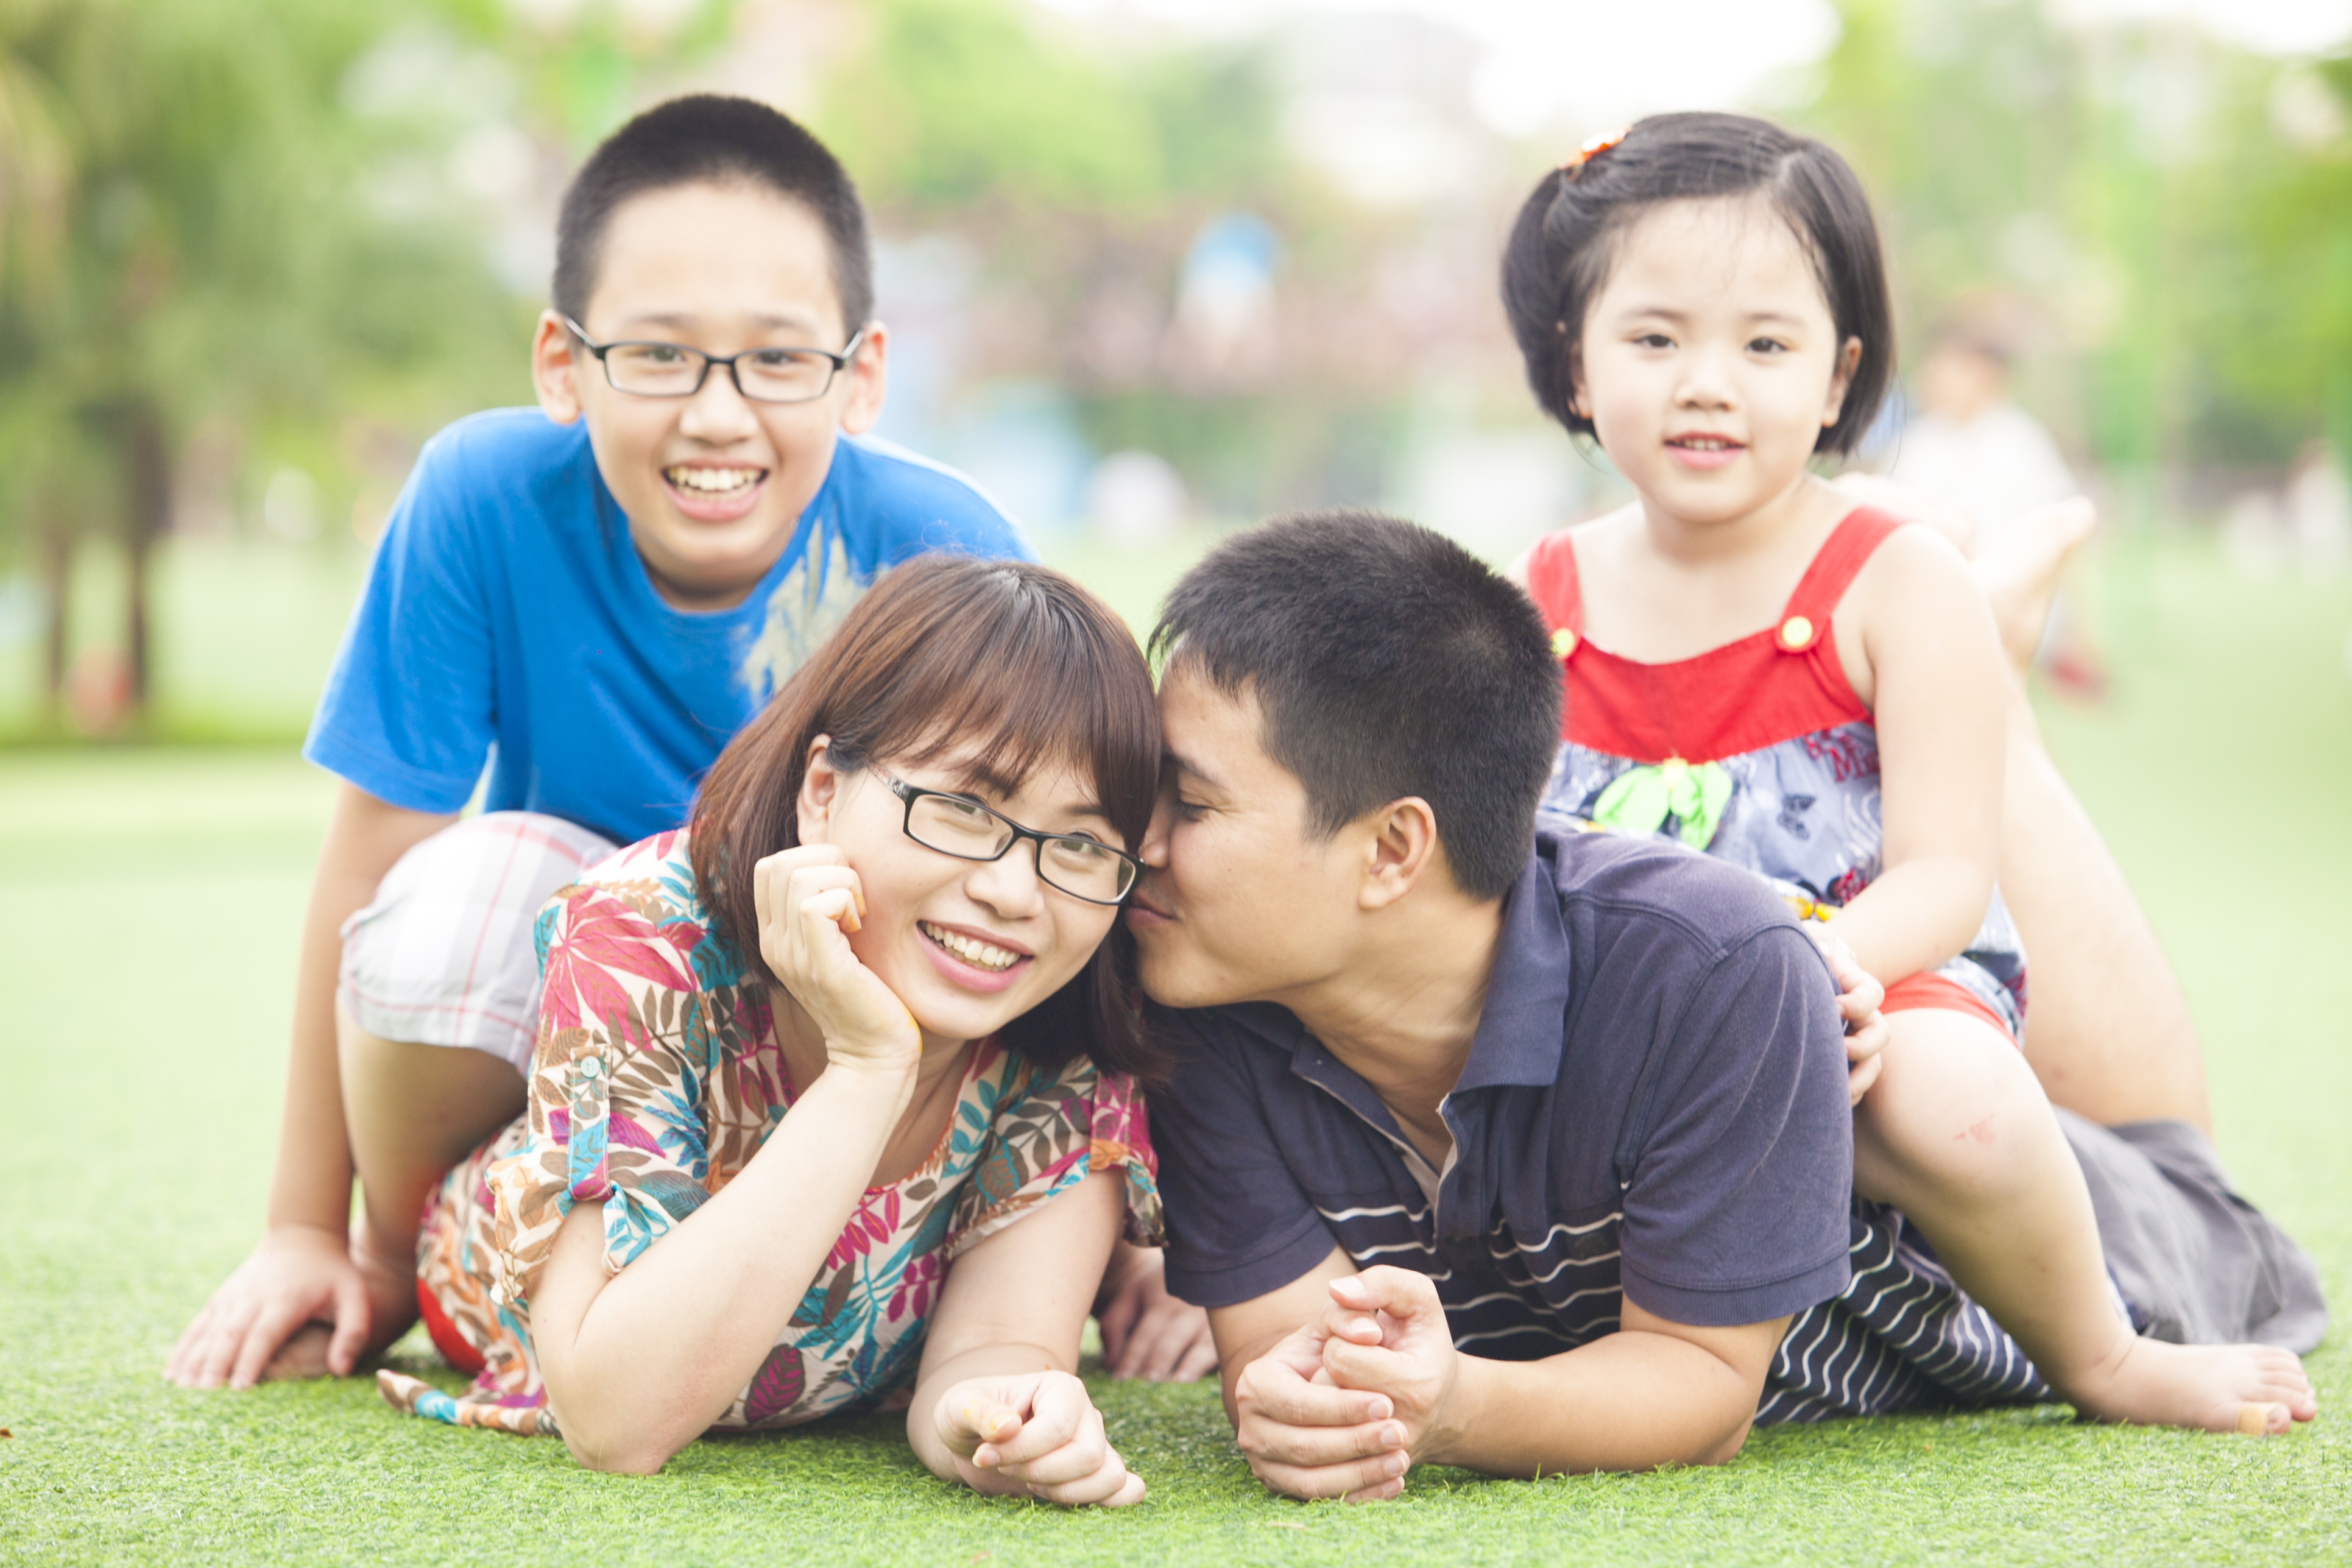   Sống trong một gia đình hạnh phúc, trẻ sẽ nuôi dưỡng được cảm xúc tích cực của mình  